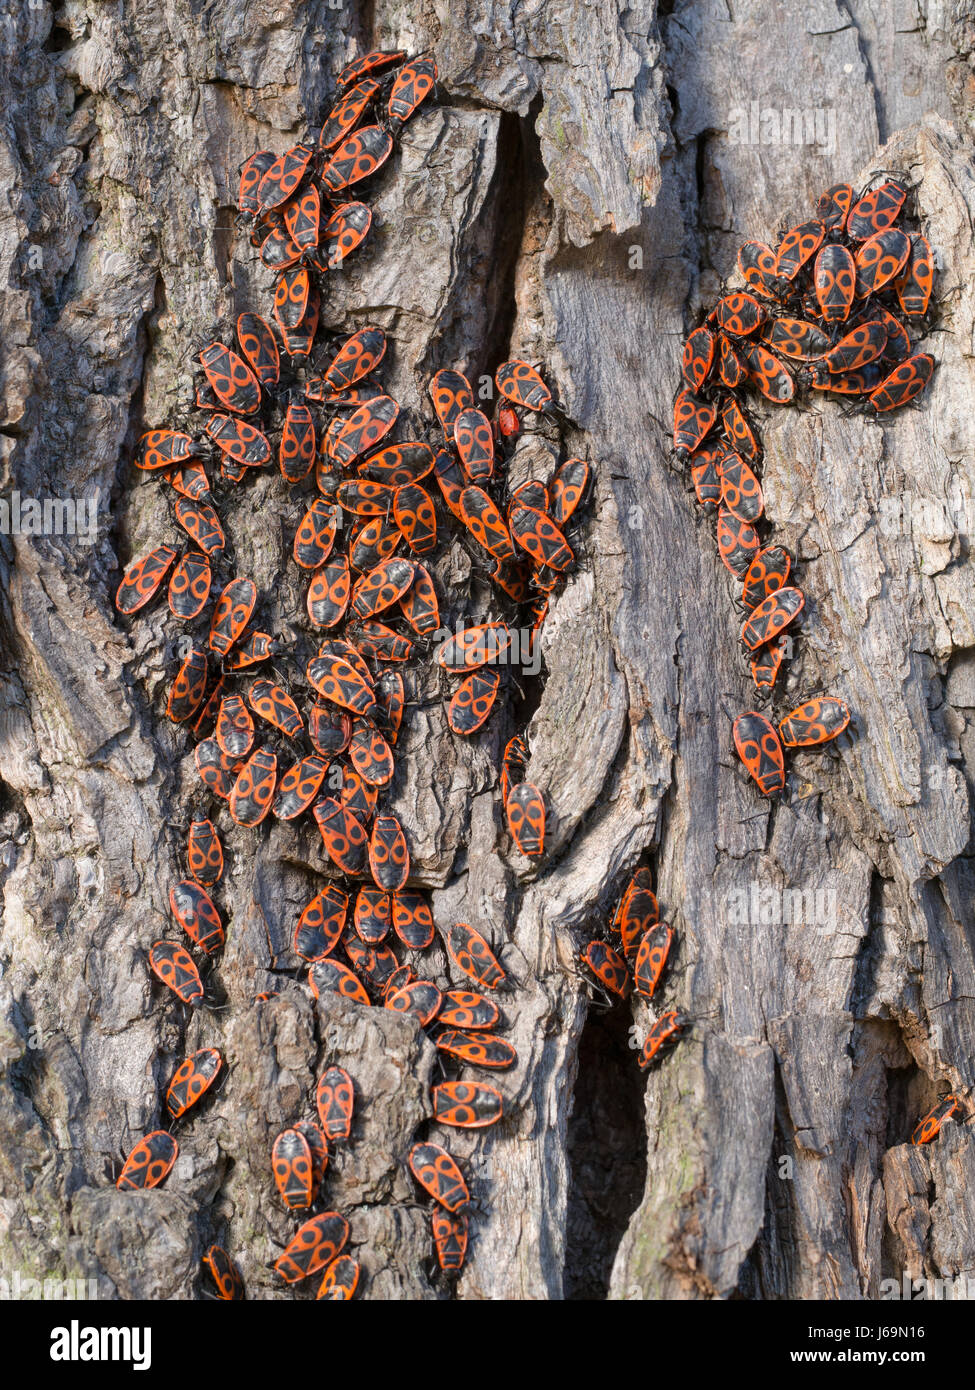 Firebug - Pyrrhocoris apterus Stock Photo